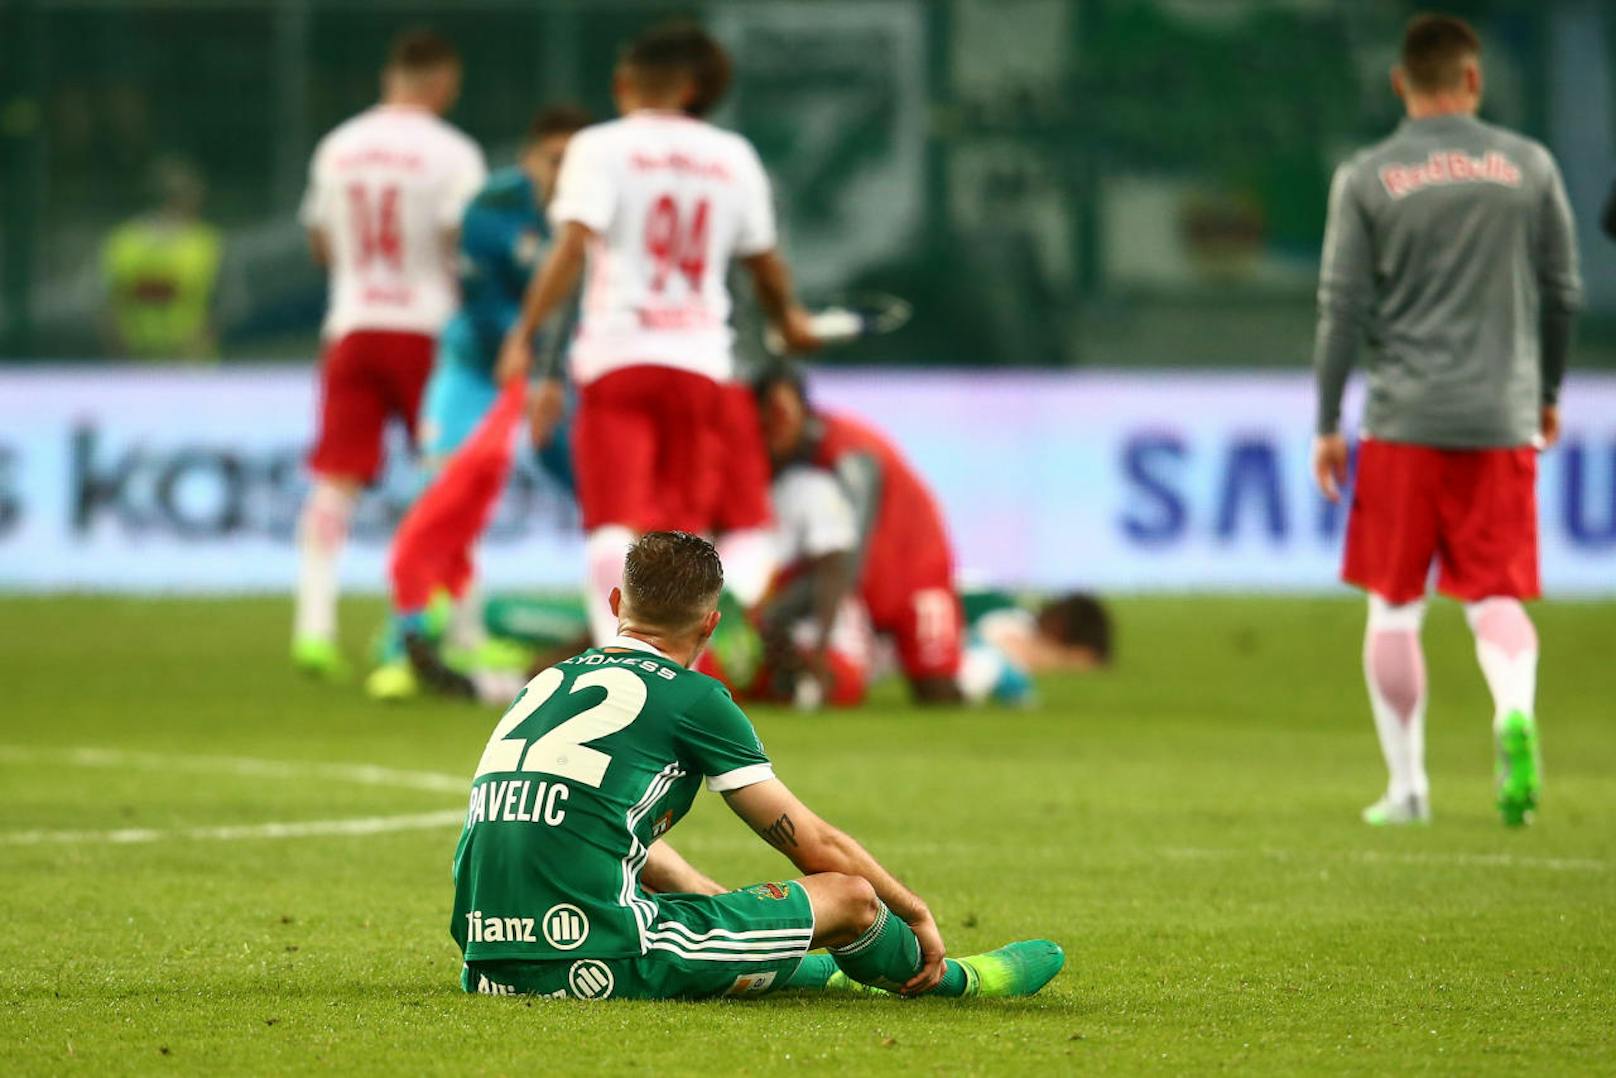 Die Saison endete für Rapid mit einer knappen 1:2-Niederlage gegen Salzburg im Cup-Finale. Aus dem erhofften ersten Titel seit 22 Jahren wurde nichts. Damit stand endgültig fest: 2016/17 geht als Krisensaison in die grün-weiße Geschichte ein.